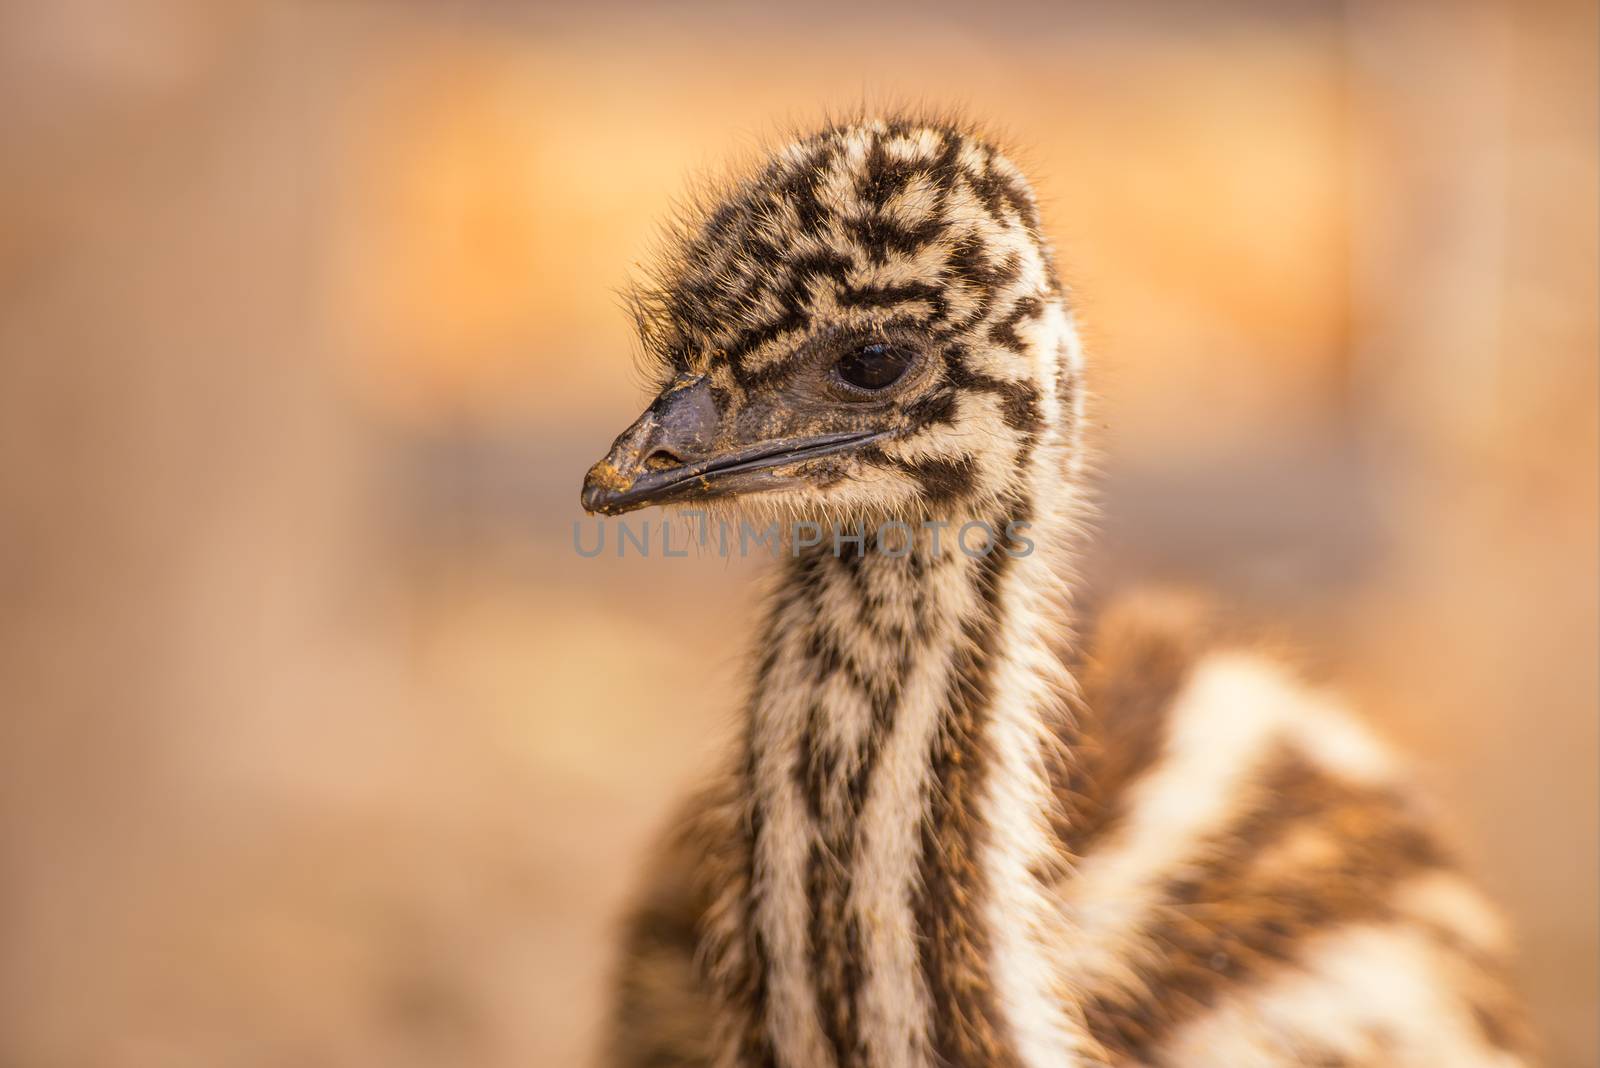 Baby Australian Emu by nickfox